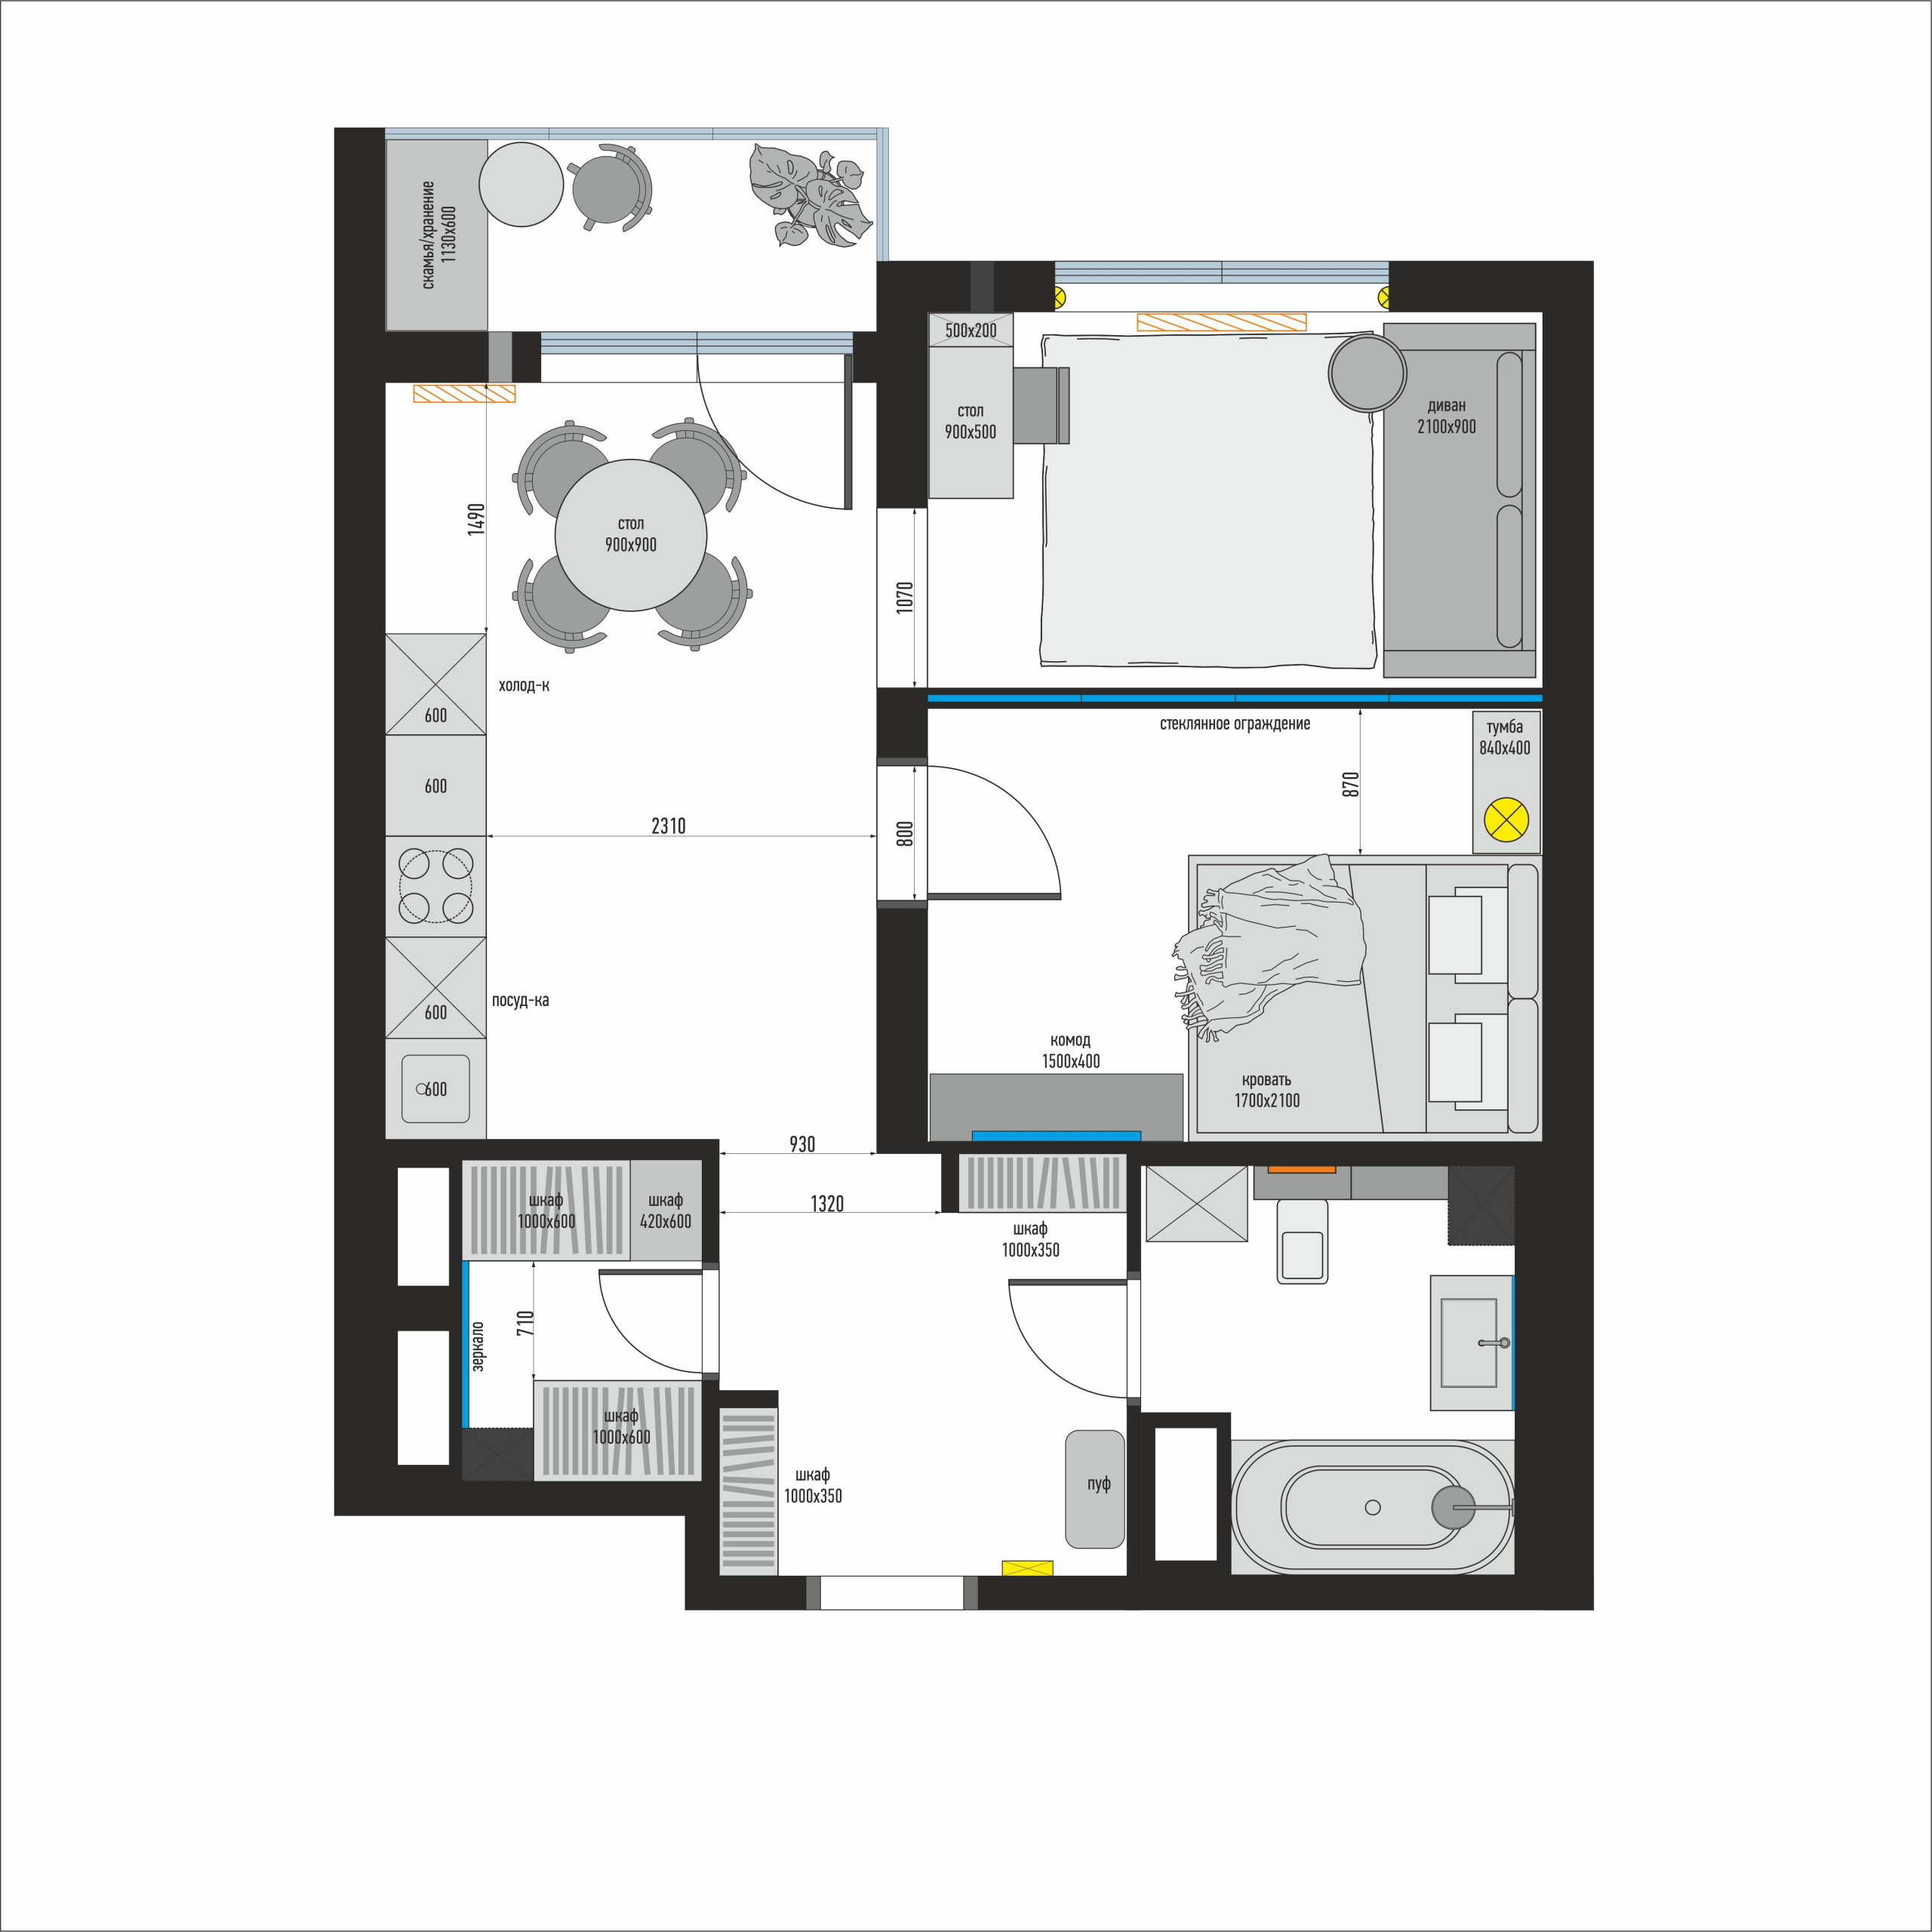 Дизайн-проект 1-комнатной квартиры 47.00 кв.м по адресу: Москва, Варшавское шоссе, д. 141, к. 10